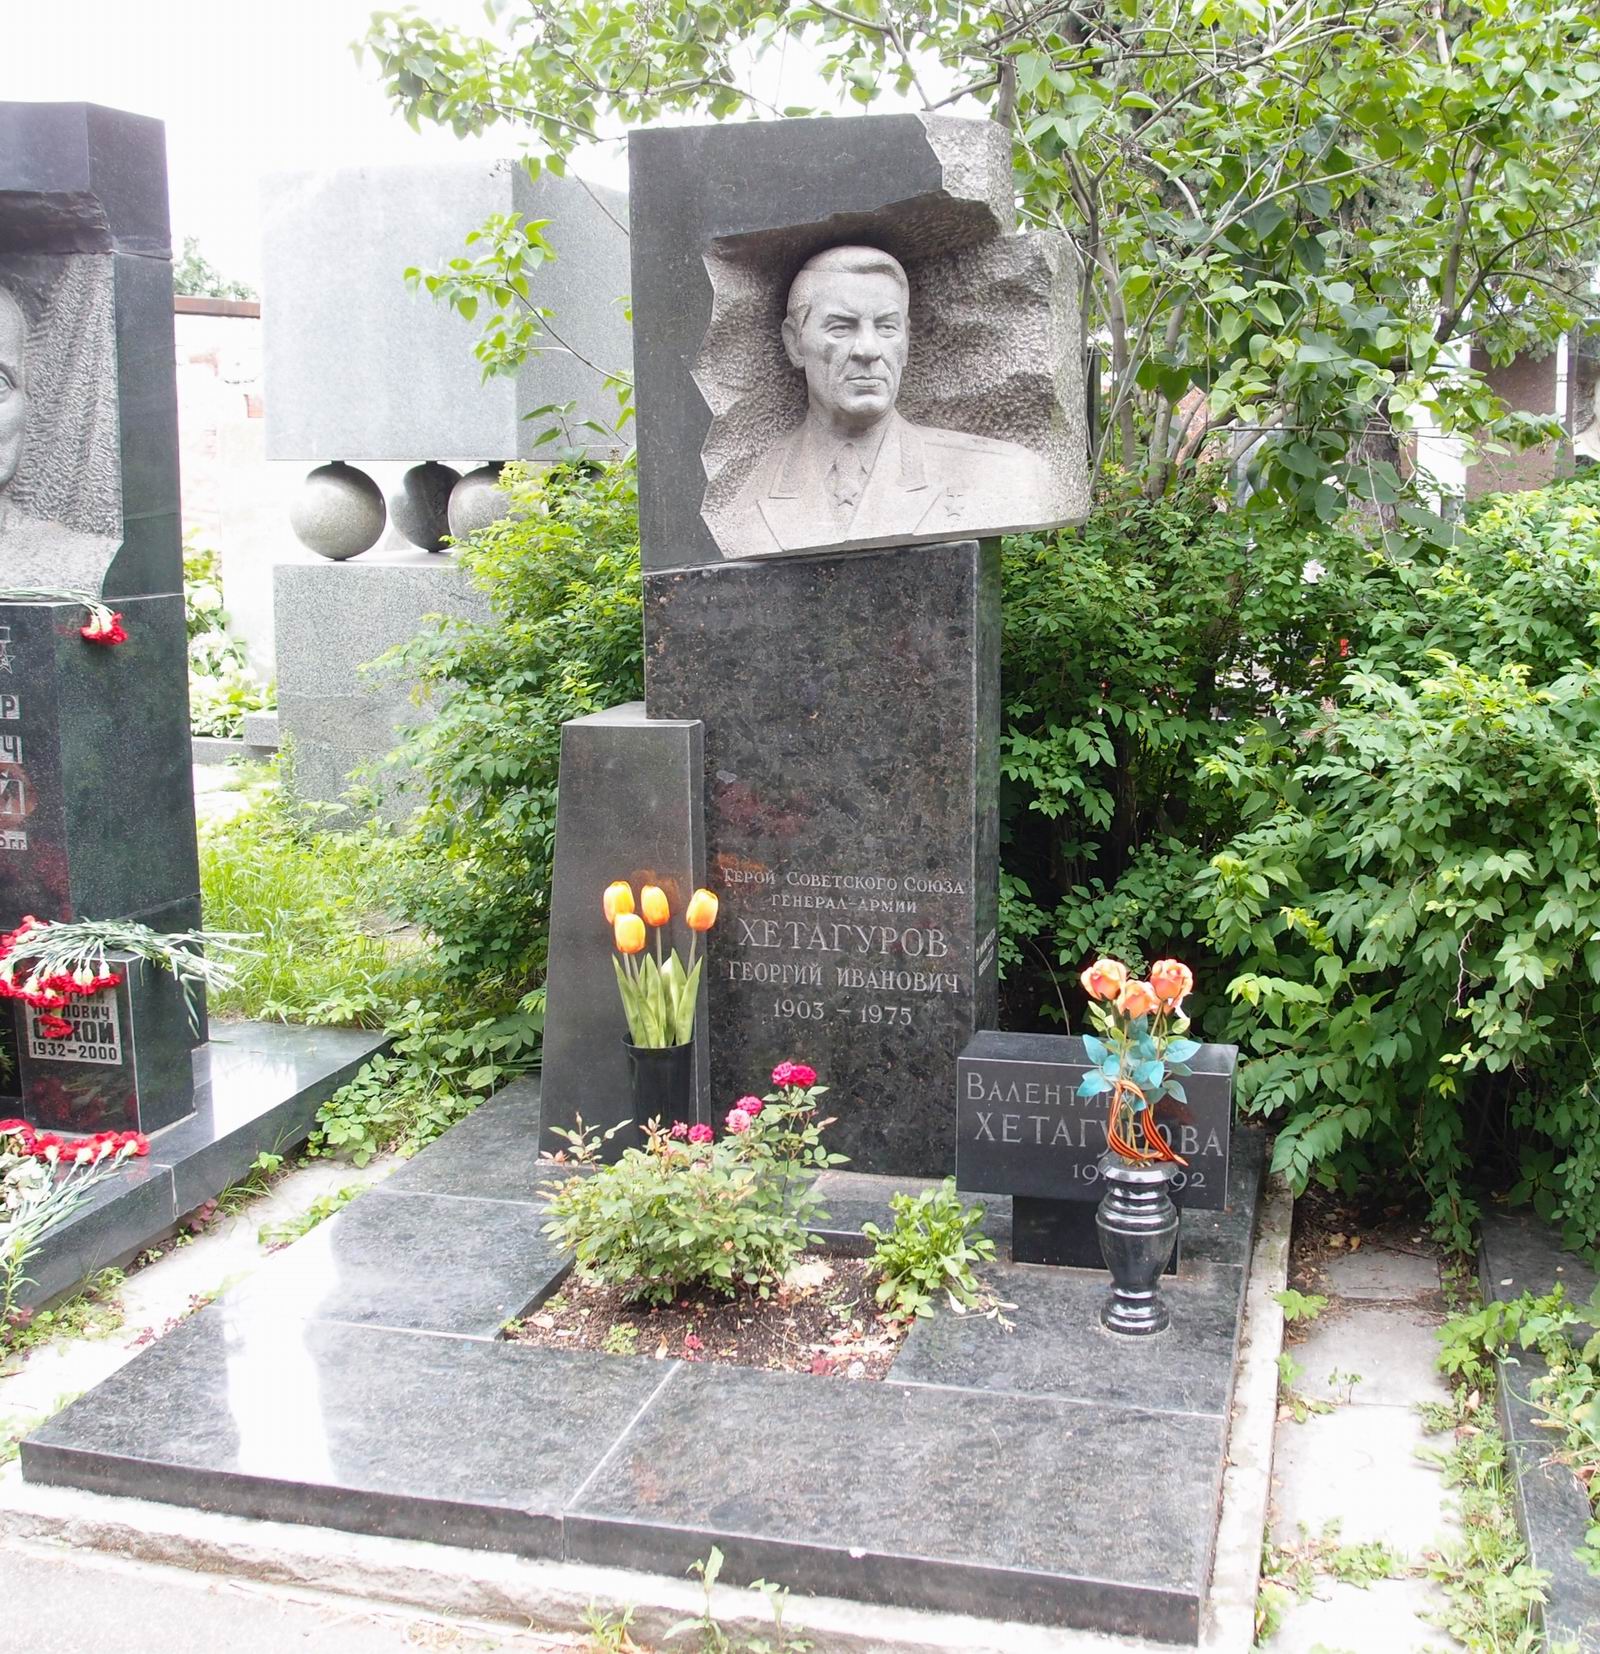 Памятник на могиле Хетагурова Г.И. (1903-1975), ск. Ю.Иванов, арх. Б.Кушков, на Новодевичьем кладбище (7-11-15).